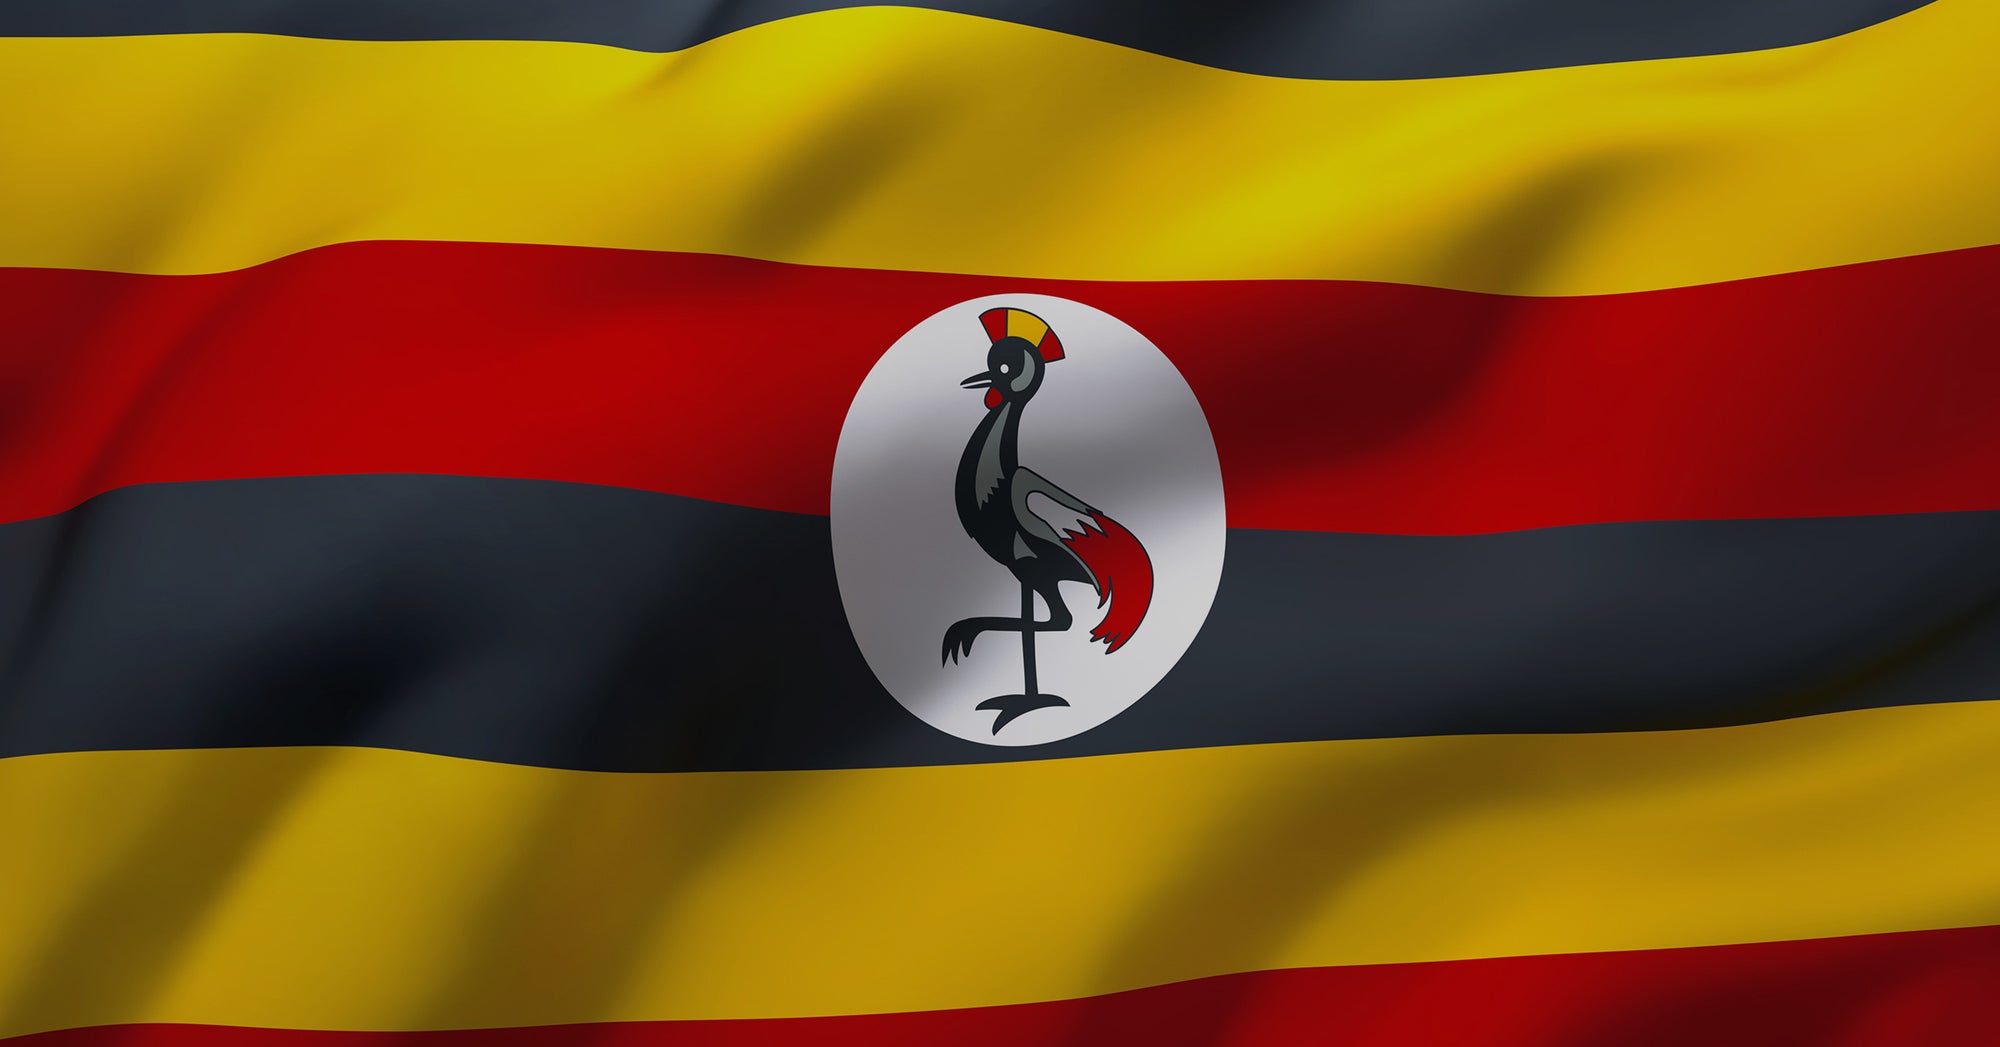 Flag of Uganda waving.